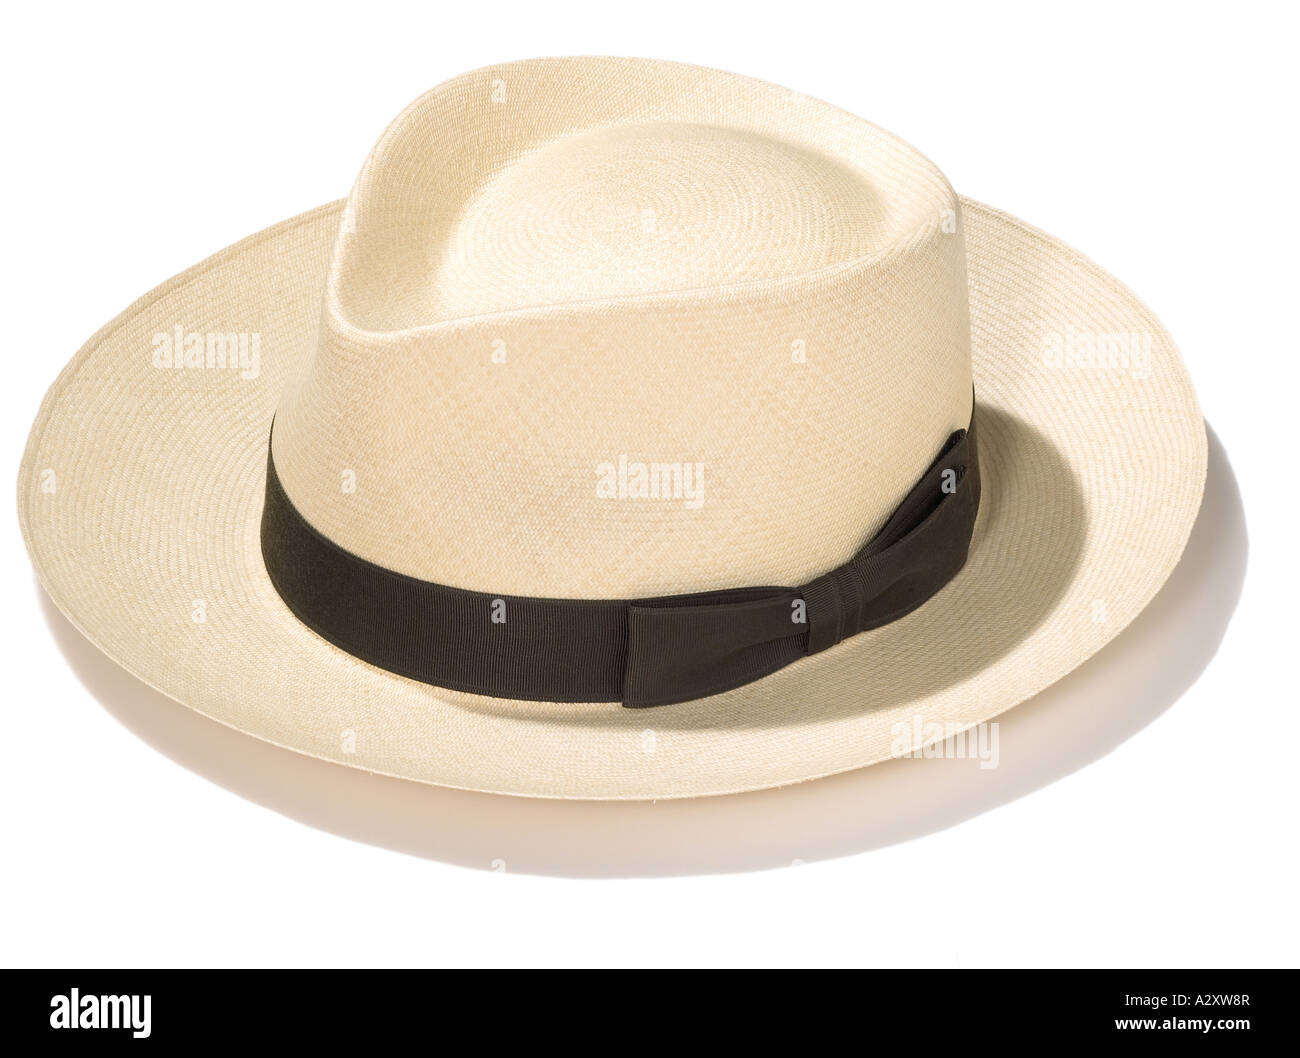 Panama hat on white Stock Photo